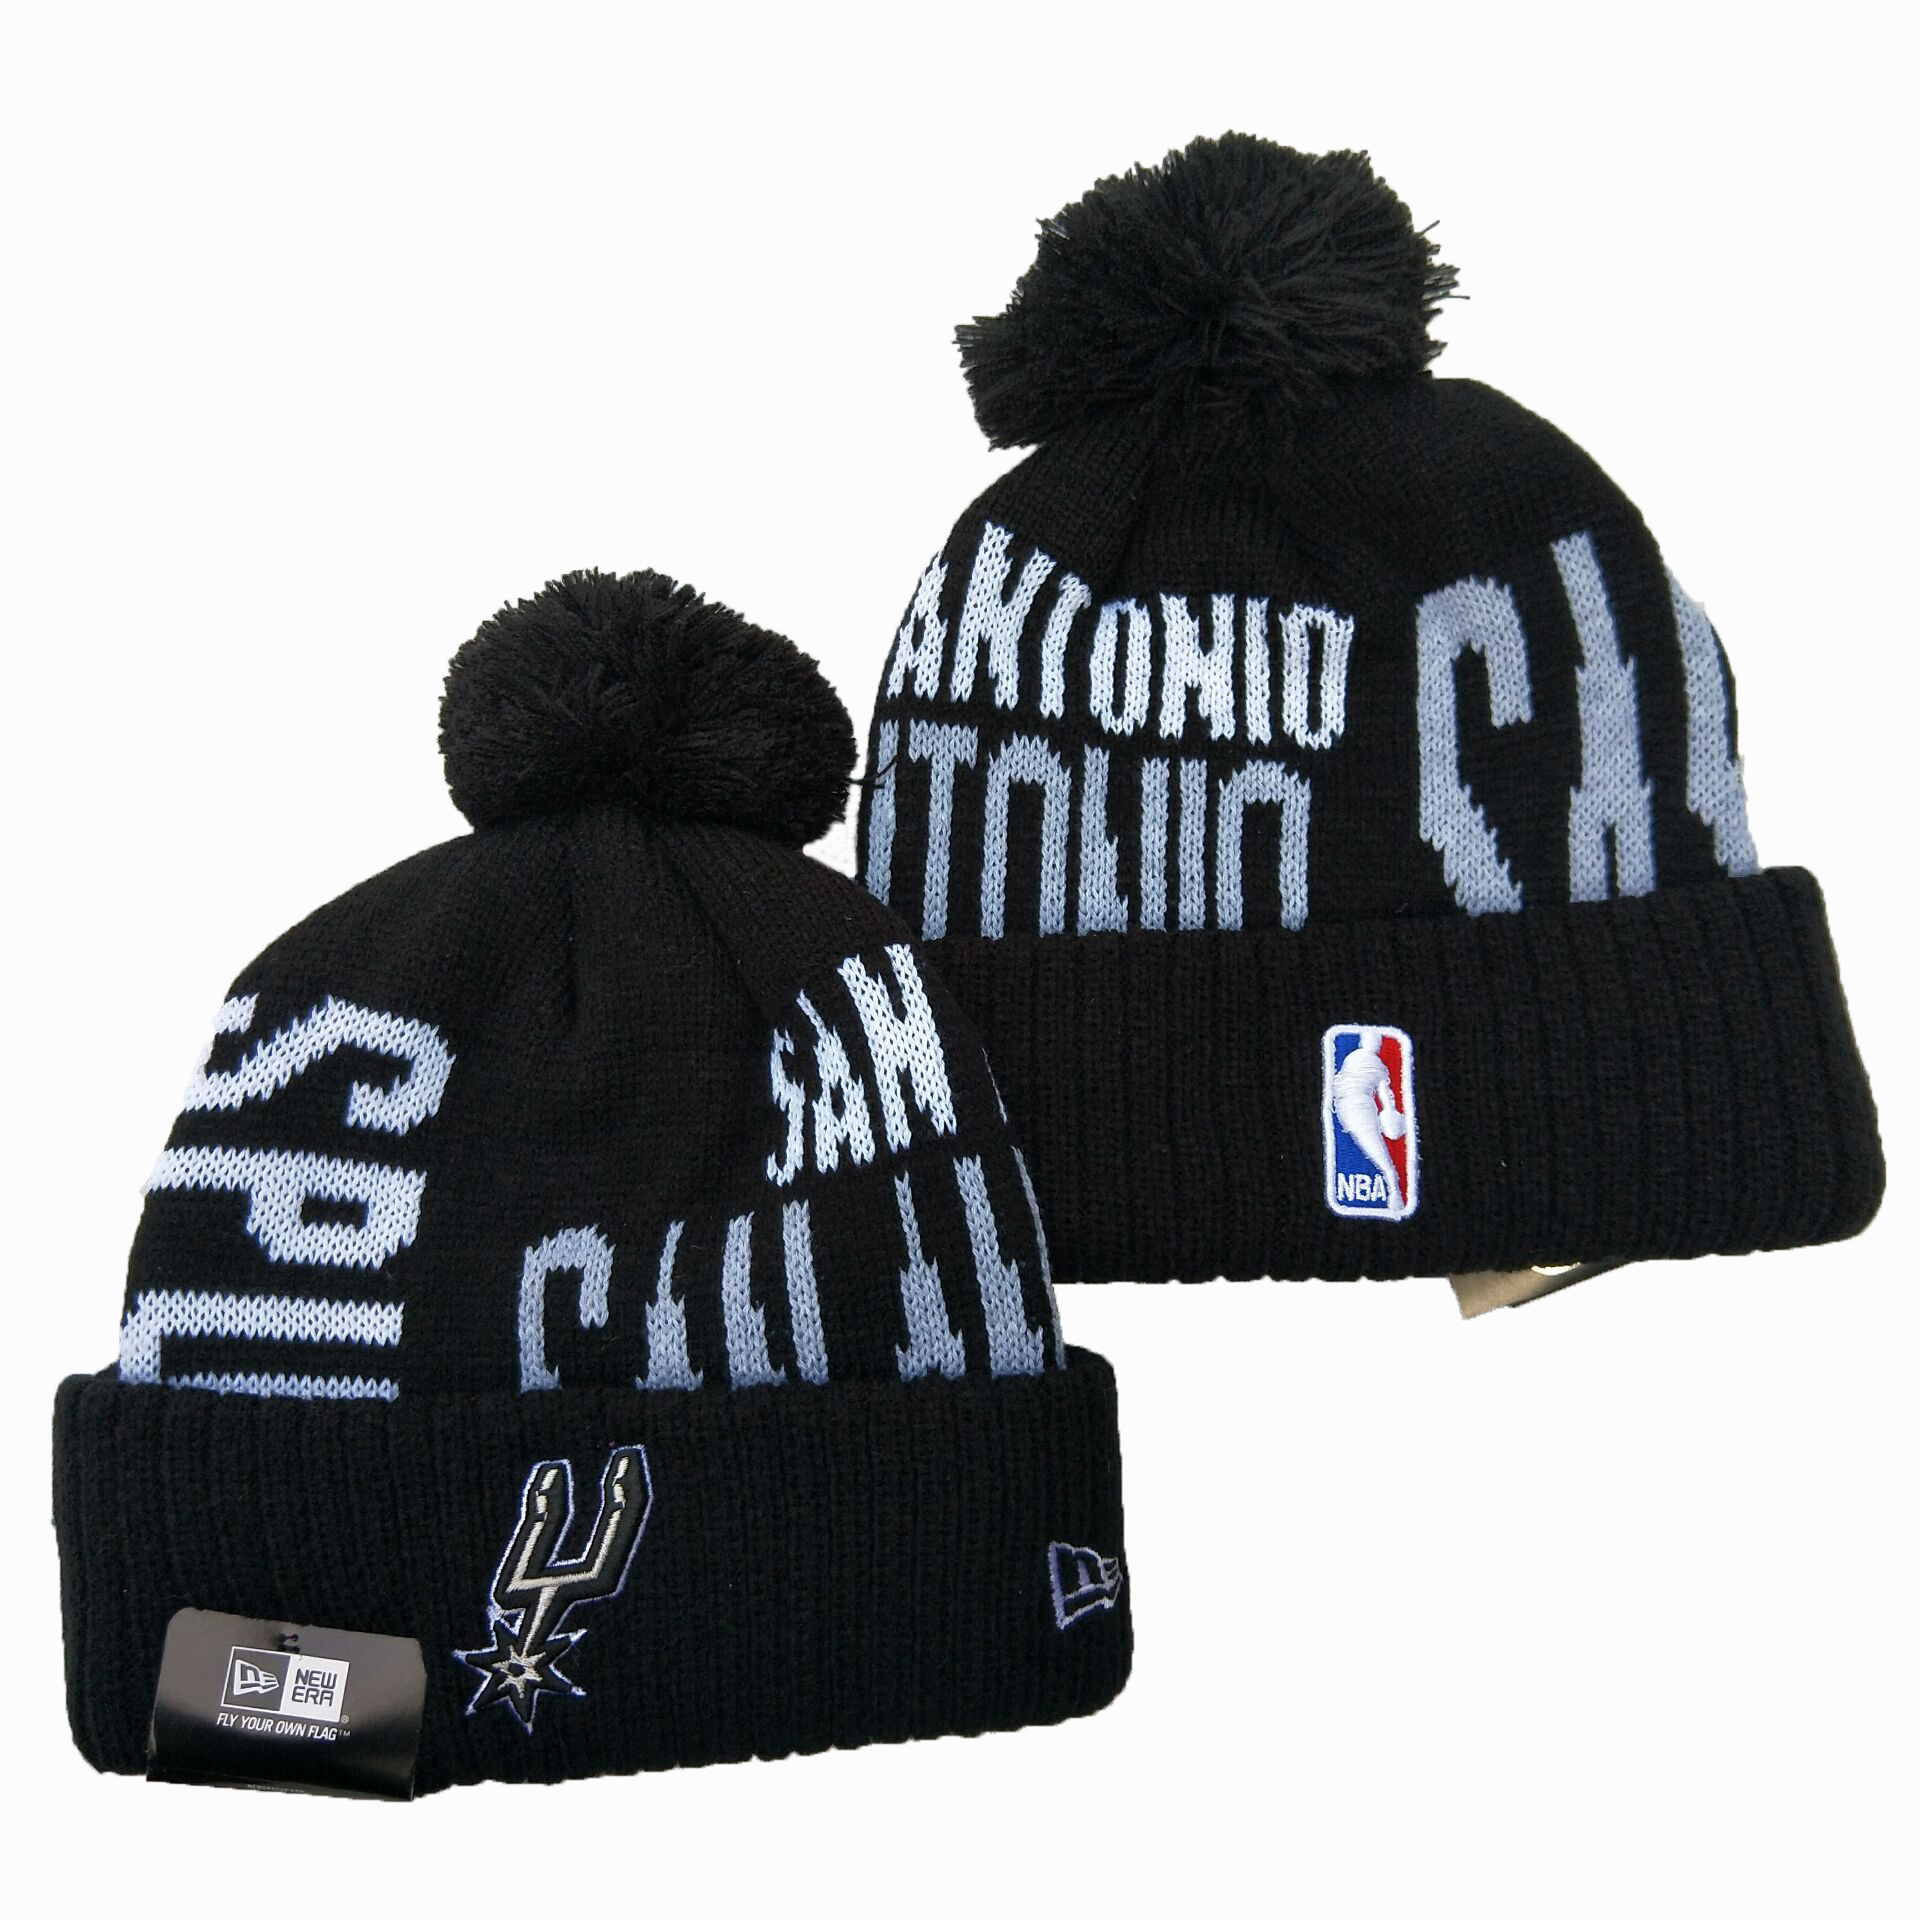 Spurs Team Logo Black Wordmark Cuffed Pom Knit Hat YD